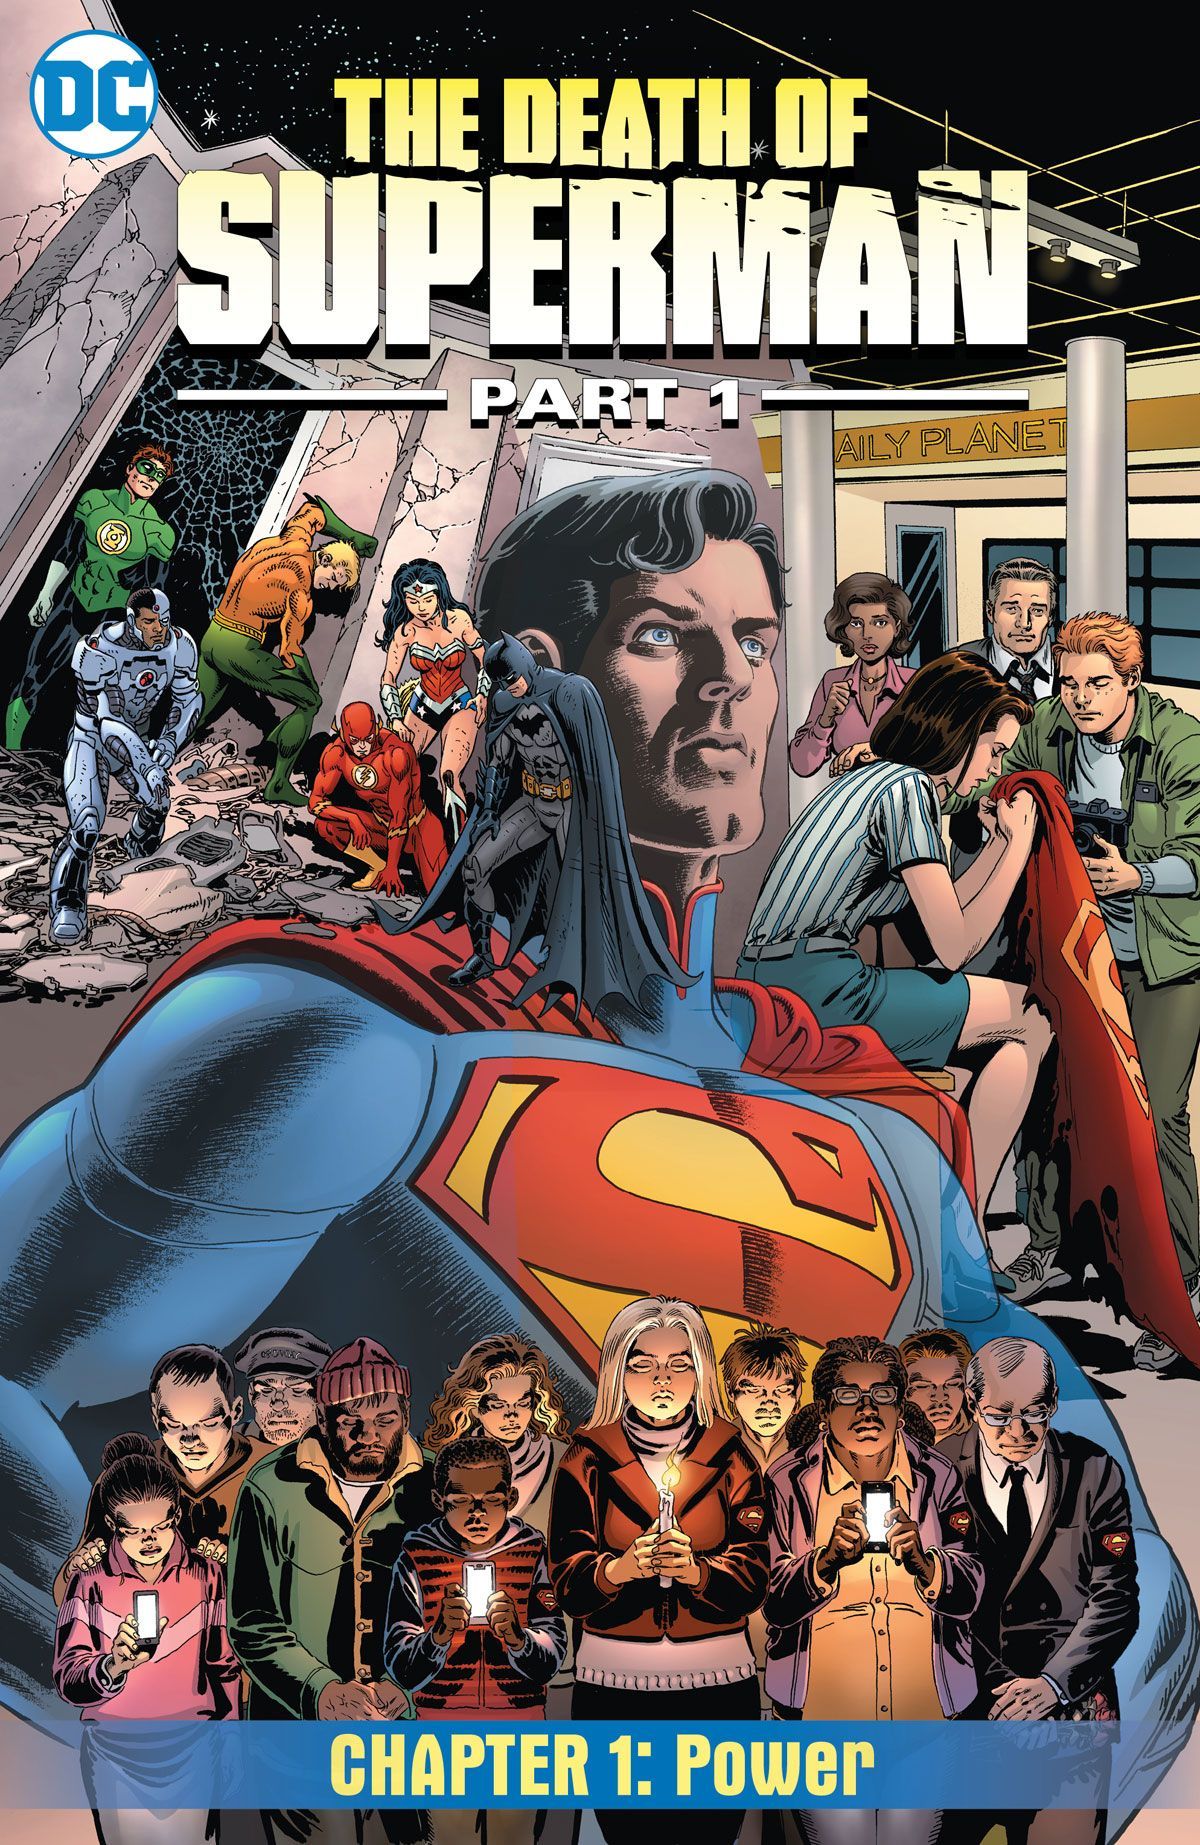 ДЦ се враћа у смрт Супермана у новом стрипу